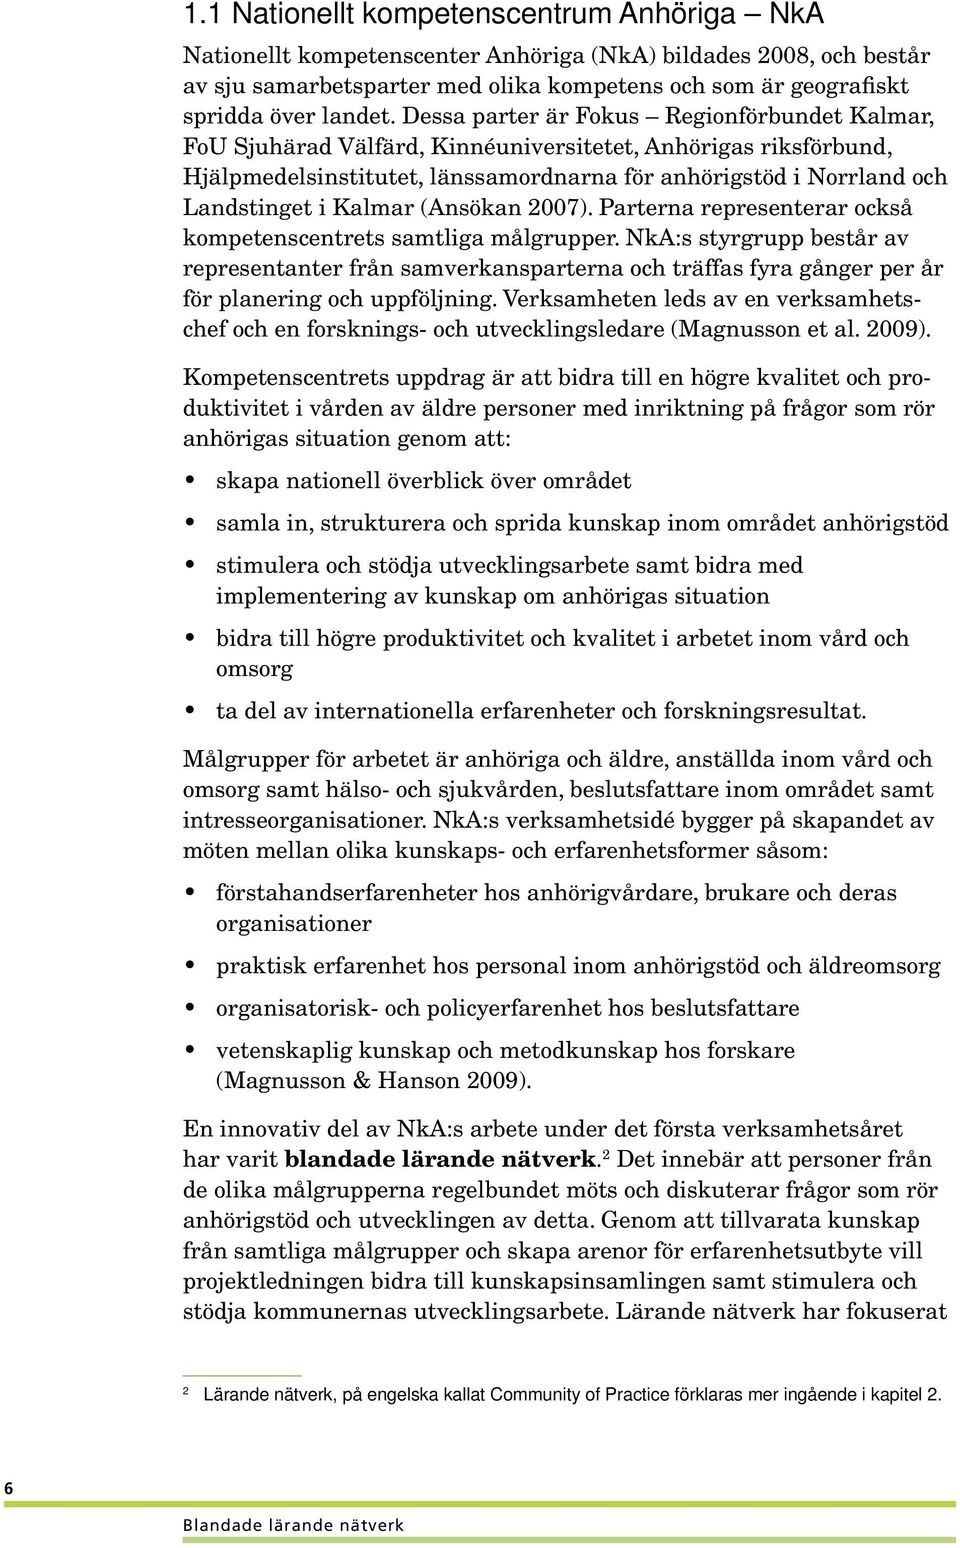 Kalmar (Ansökan 2007). Parterna representerar också kompetenscentrets samtliga målgrupper.